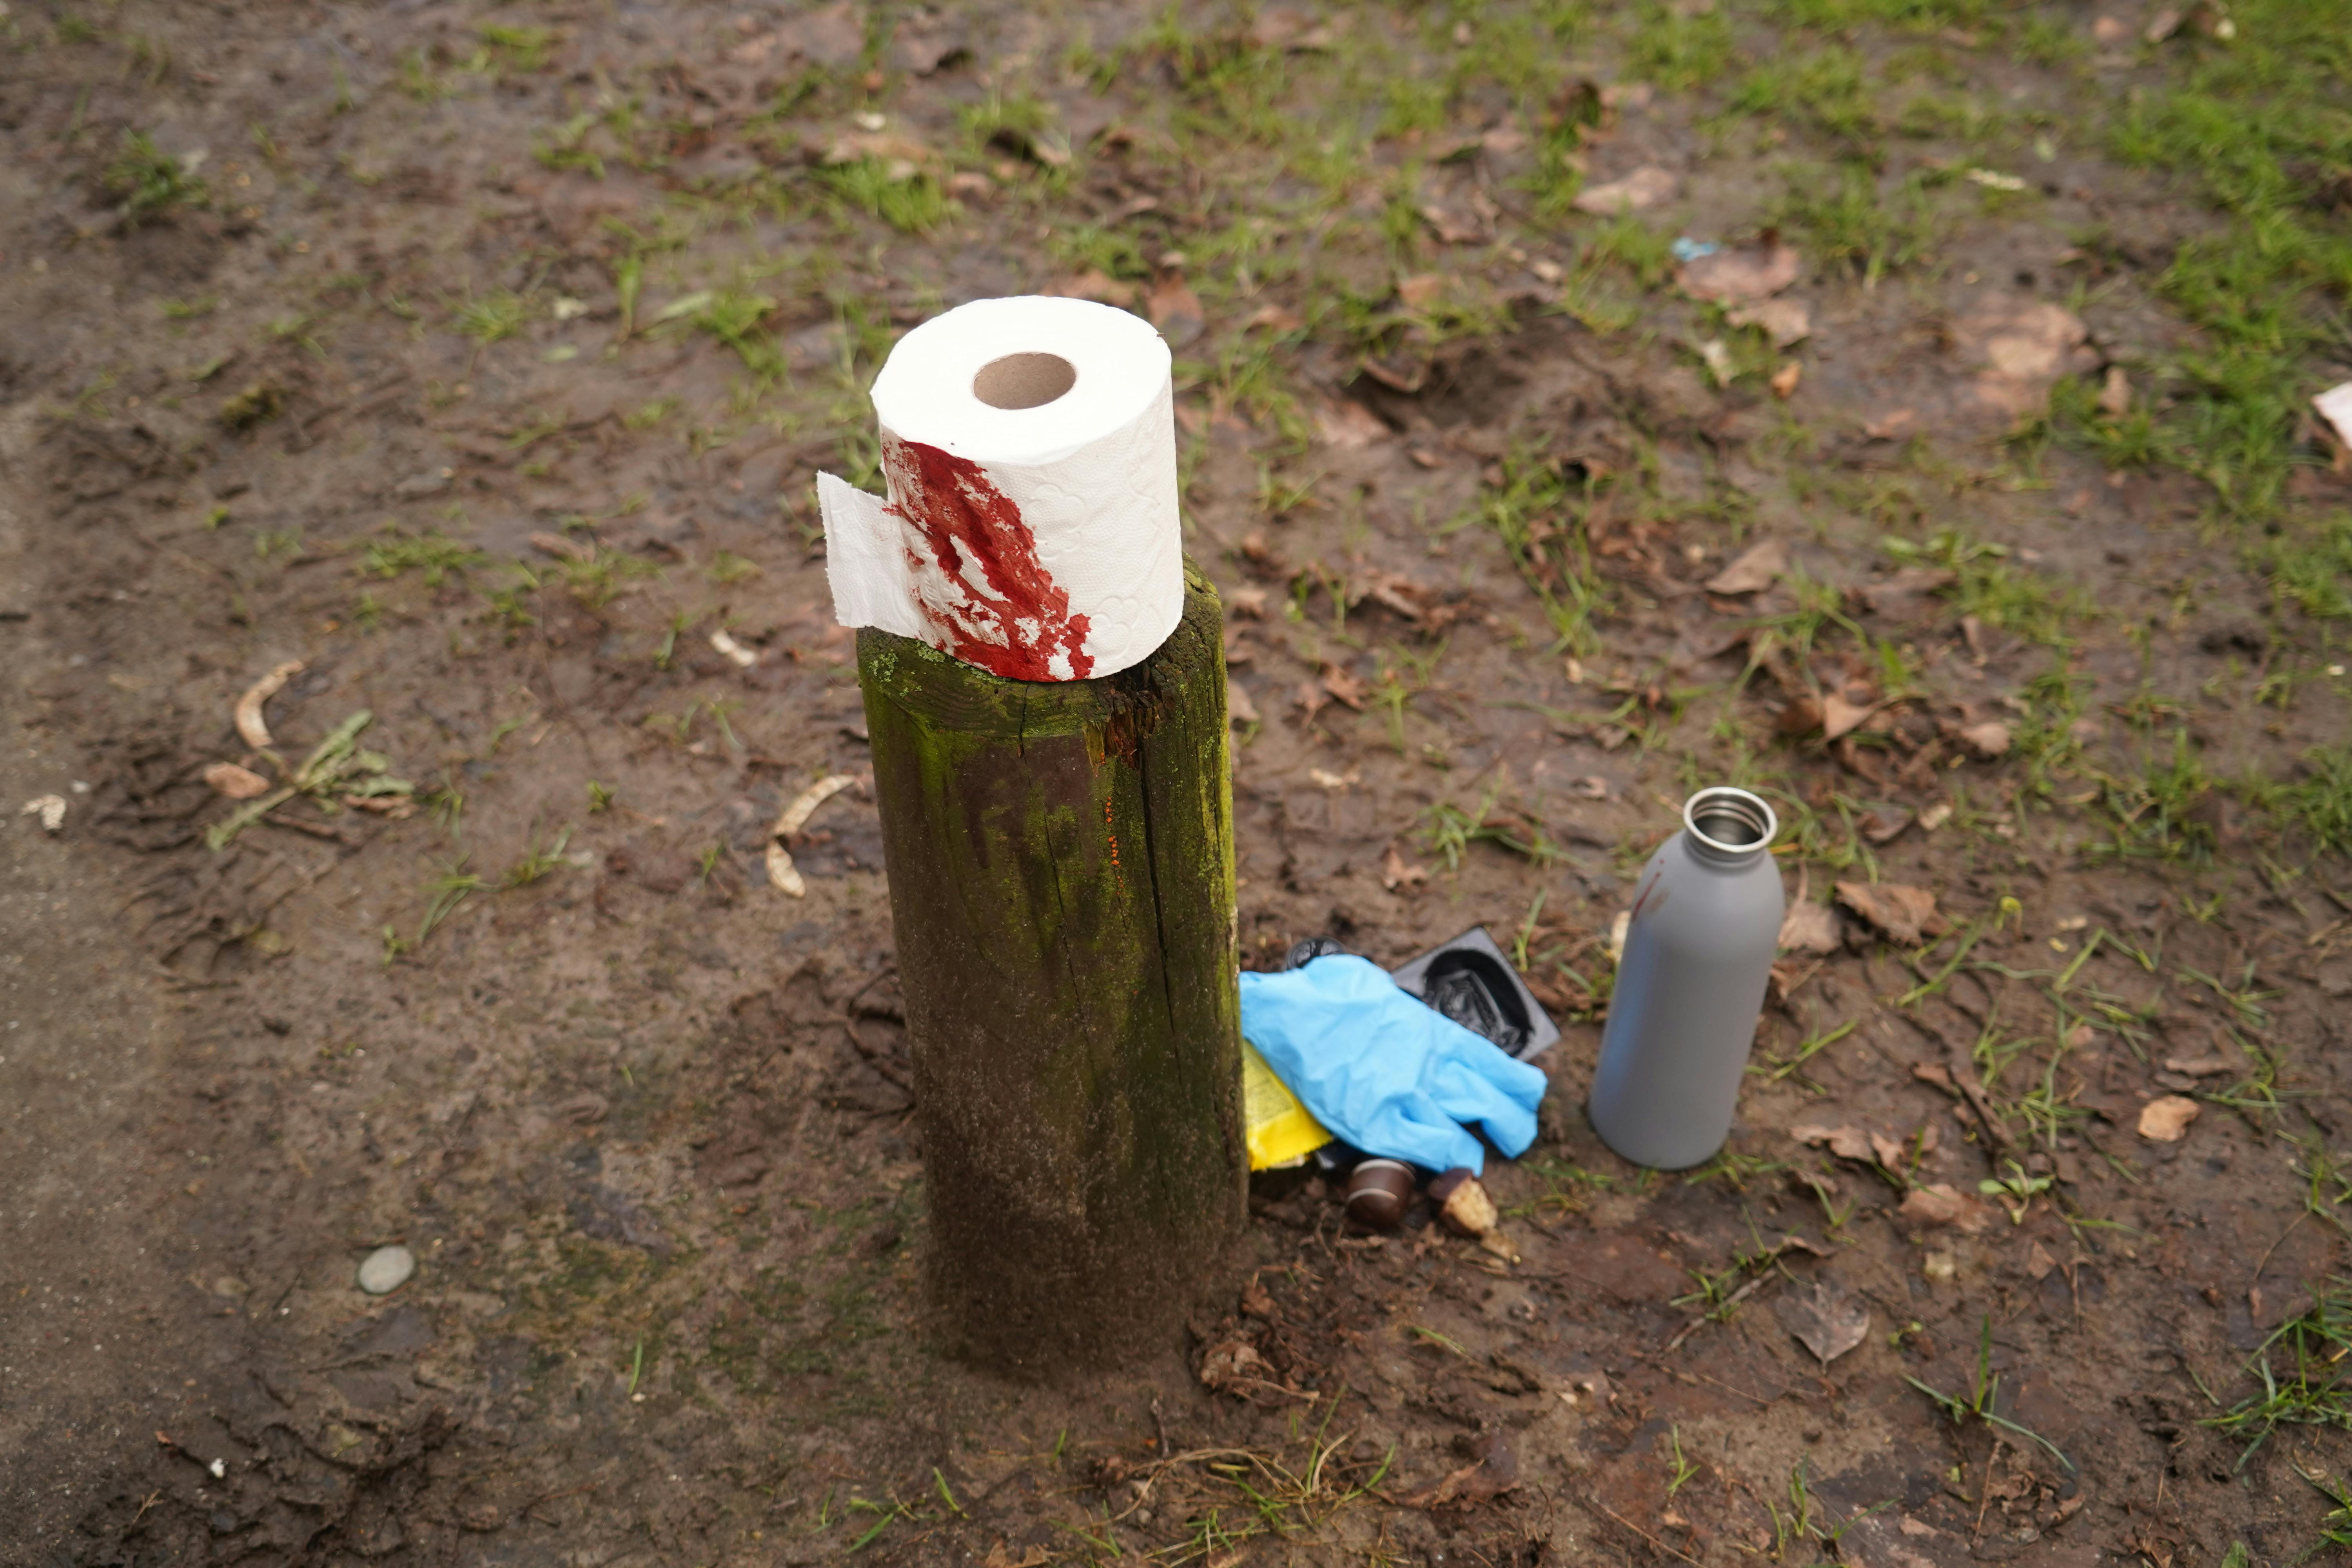 På billeder fra stedet er der tydelige spor af blod på nogle toiletruller.